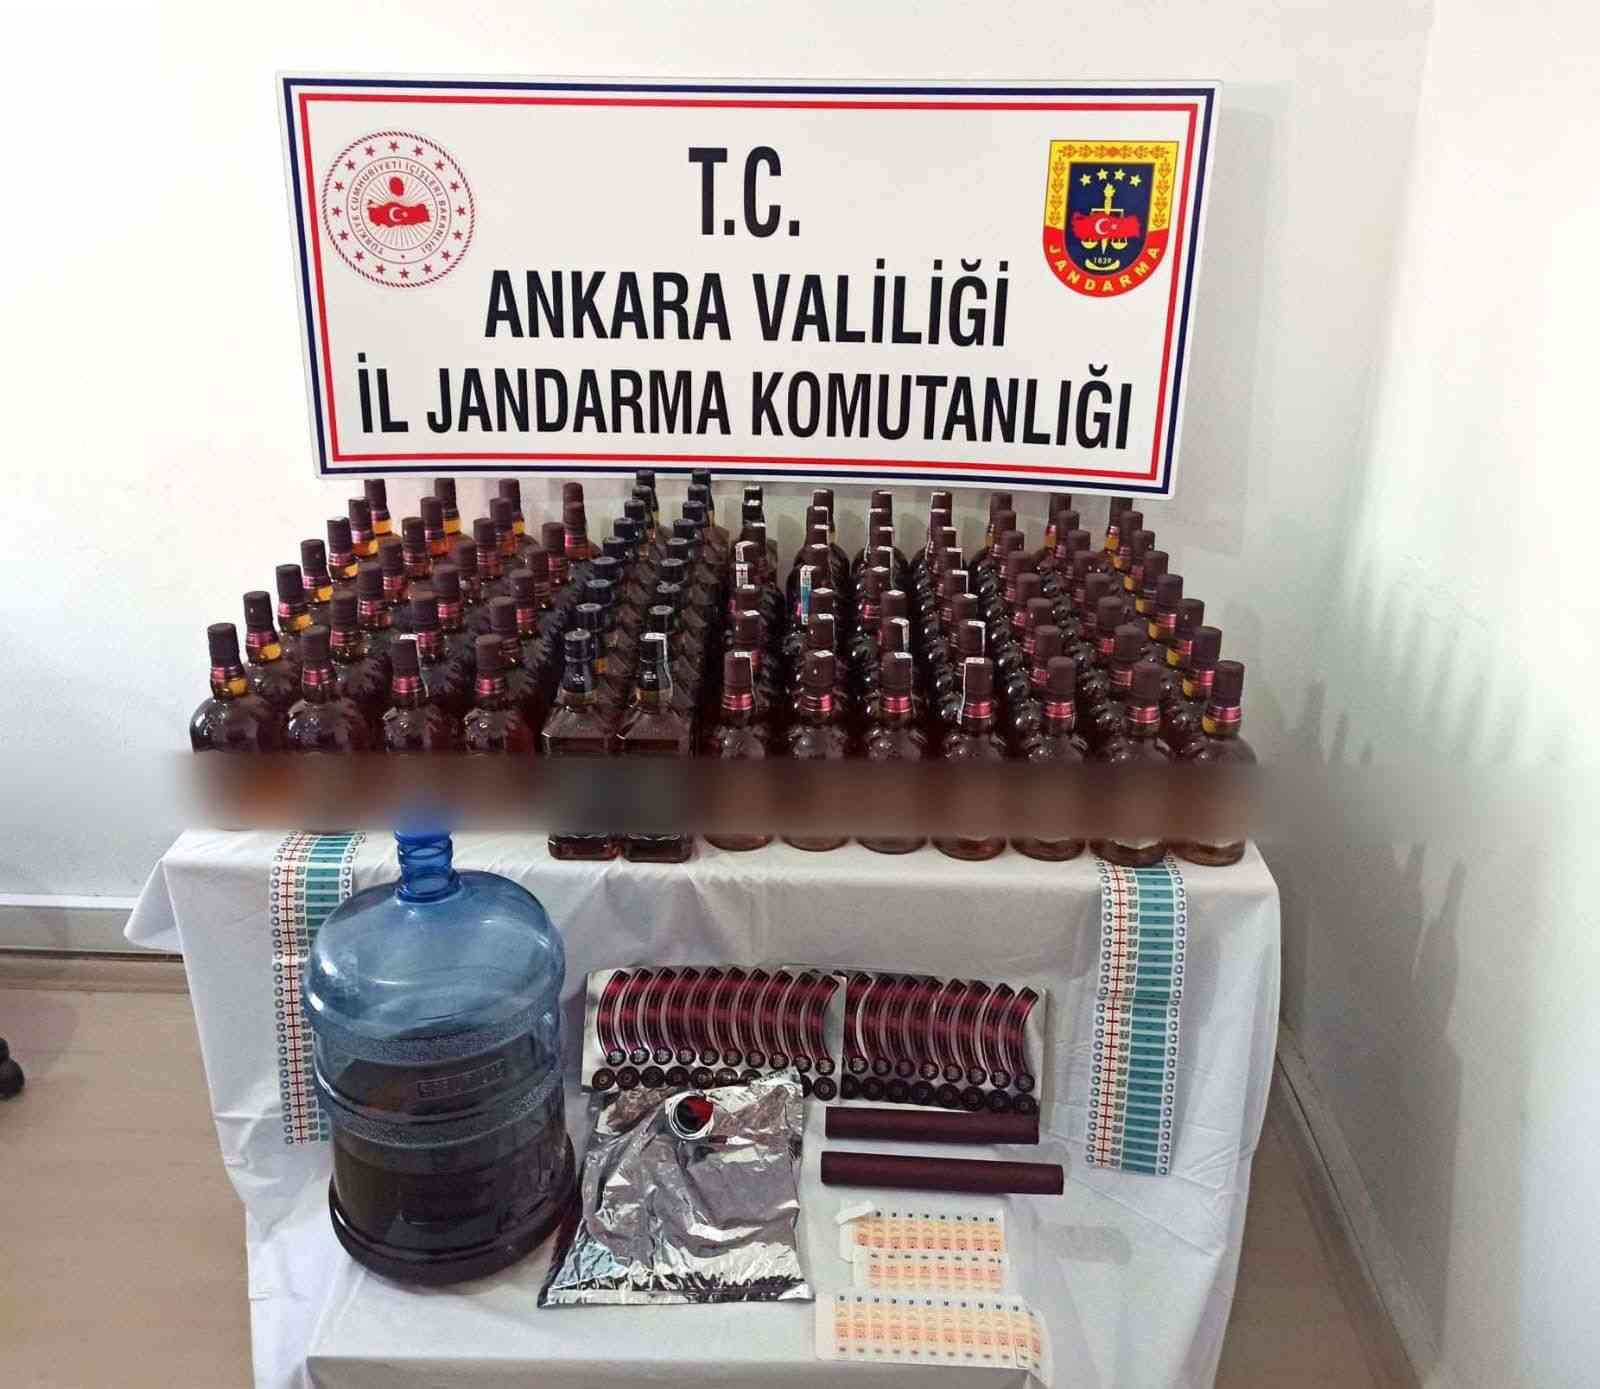 Sahte alkollü içki üretimi ve satışı yapan şahıslara operasyon: 2 gözaltı #ankara